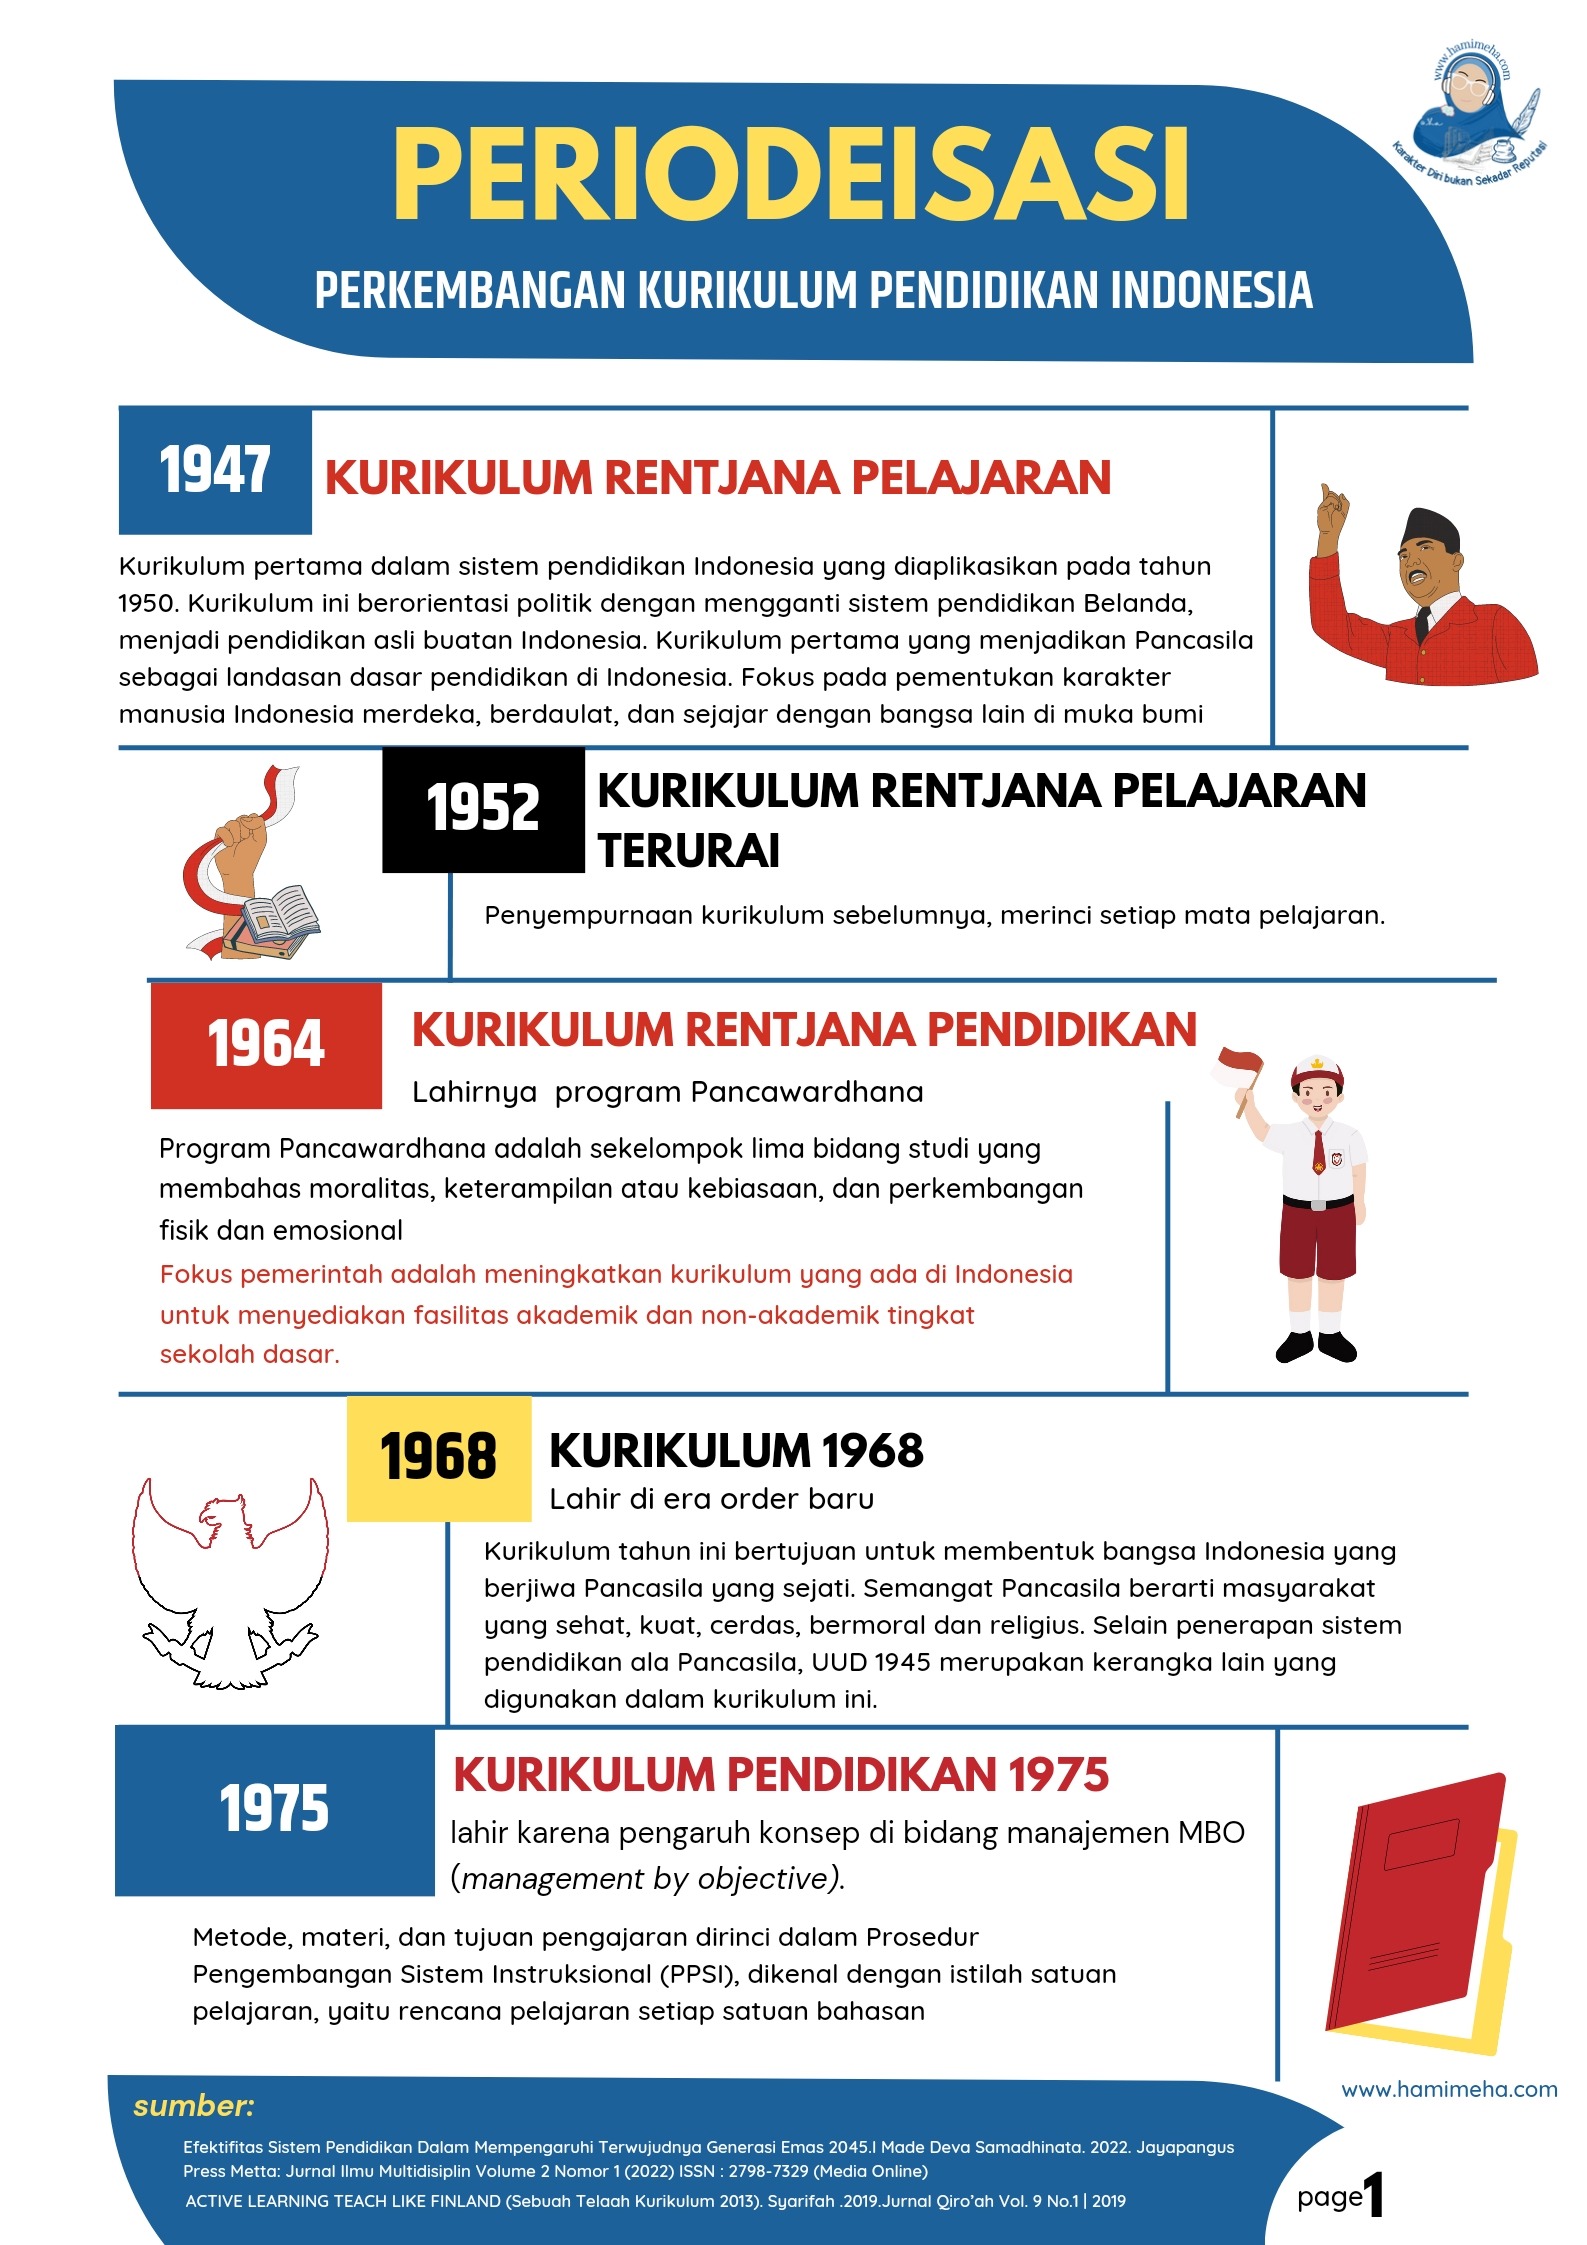 Periodeisasi perubahan kurikulum di Indonesia